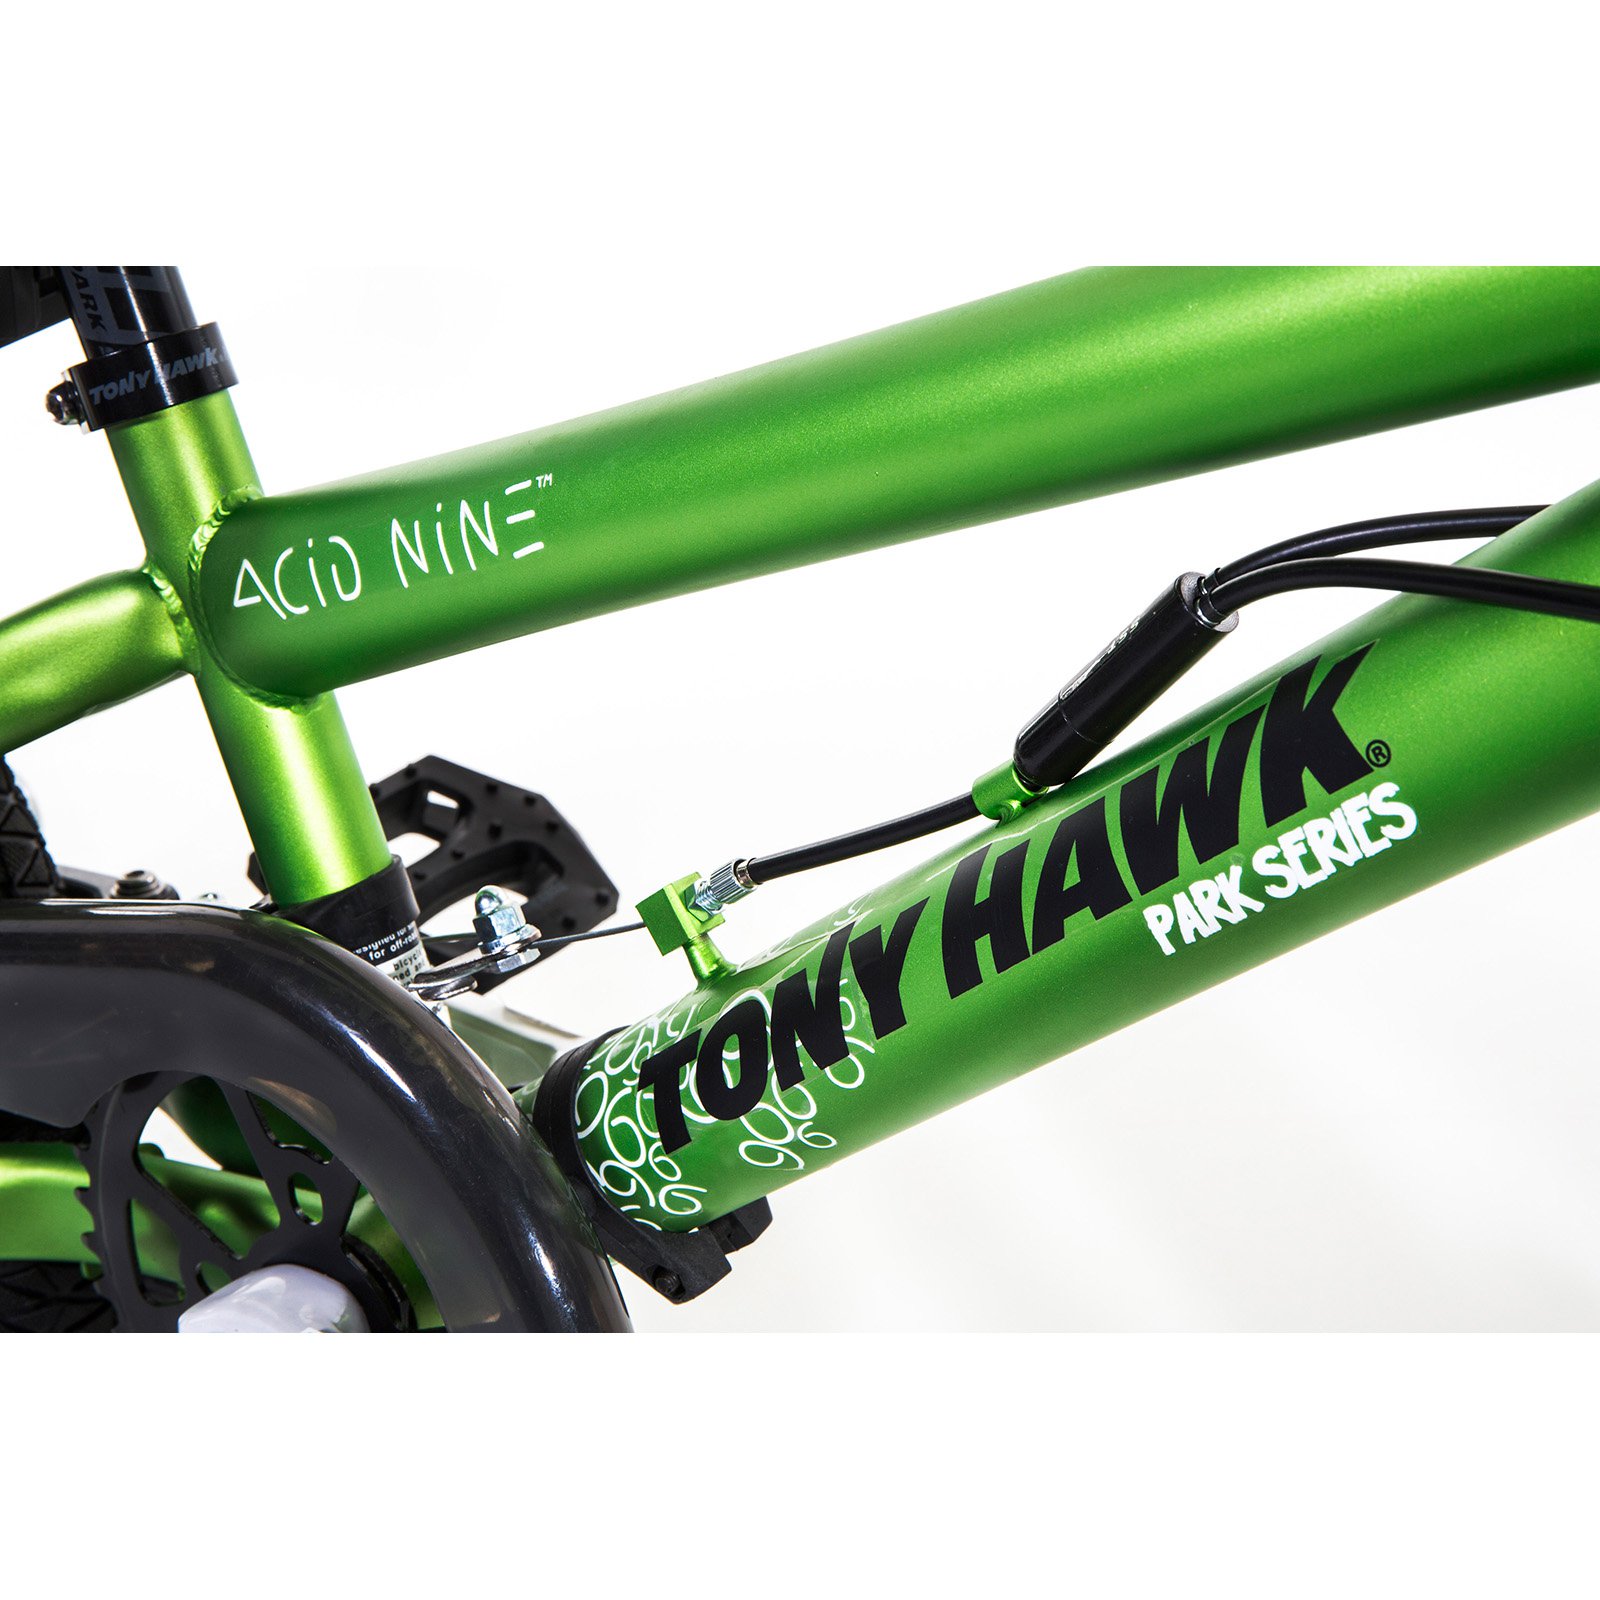 18" Tony Hawk Acid Nine Bike - image 3 of 6